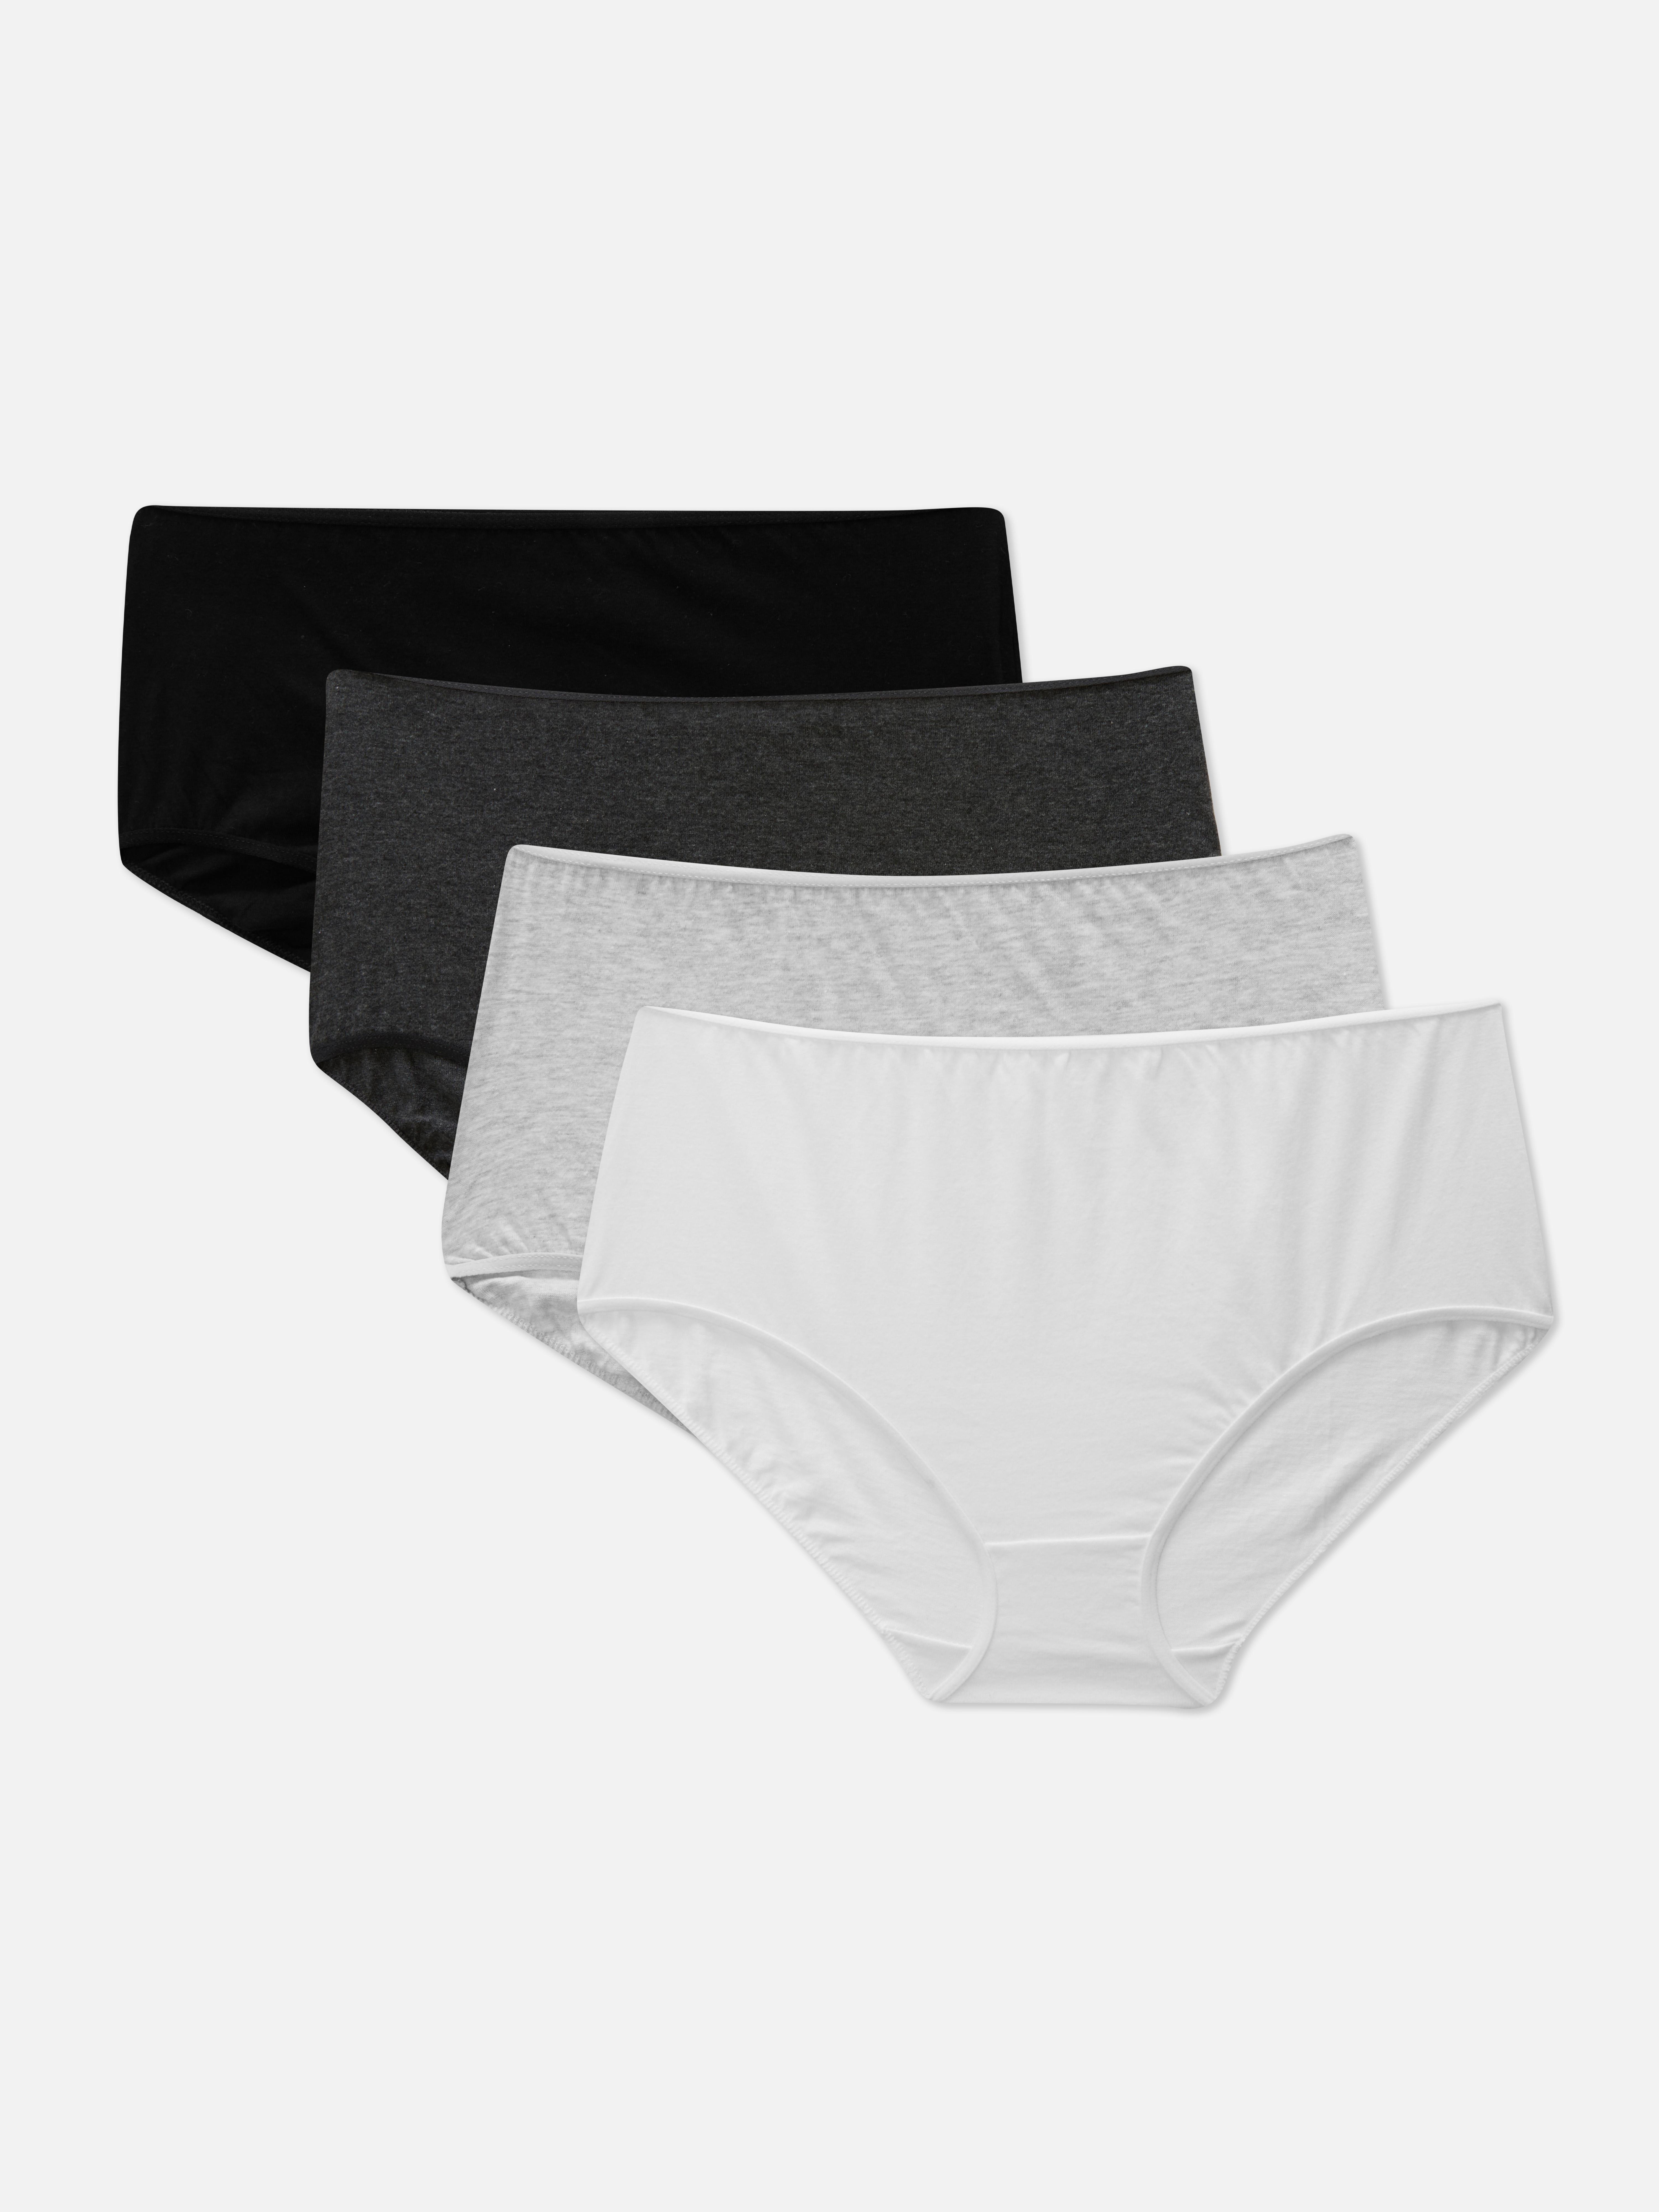 Primark Ladies Women Full Briefs Knickers Underwear 100% Cotton - 4 Pack